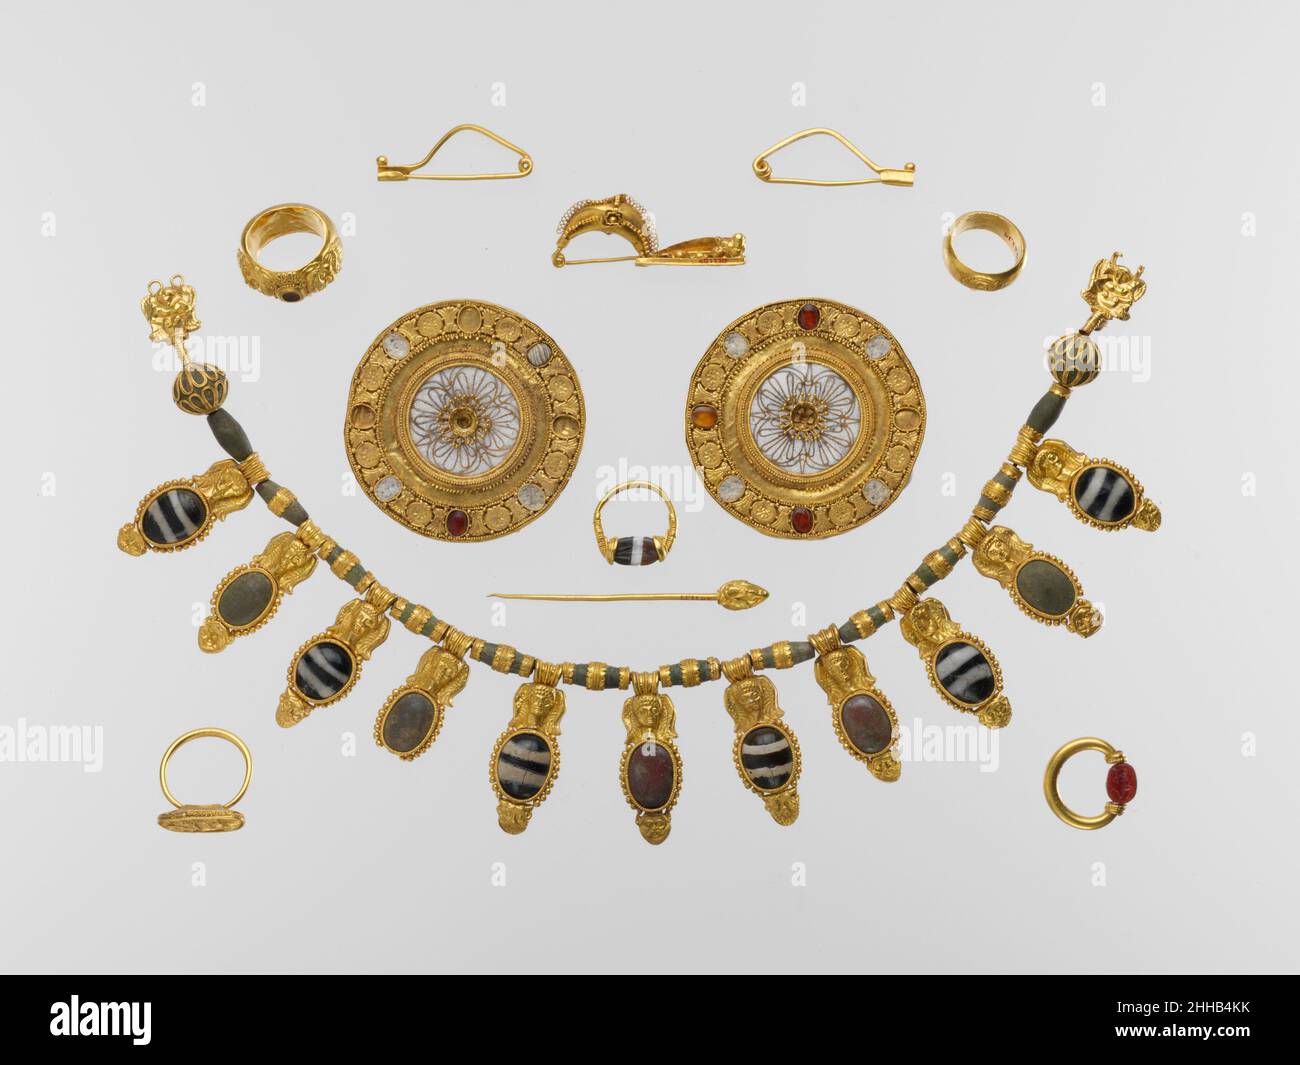 Ensemble de bijoux début de 5th siècle avant J.-C. étrusque le groupe de tombeau représente l'un des ensembles les plus riches et les plus impressionnants de bijoux étrusque jamais trouvé.Il comprend un magnifique collier en or et verre, une paire de boucles d'oreilles disques en or et cristal de roche, une attache de robe dorée (péroné) décorée d'un sphinx, une paire de péronés dorés, une épinglette en or et cinq anneaux de doigt.Deux des anneaux ont des scarabs gravés qui tournent sur un cadre pivotant; l'un est décoré avec des têtes satyr en relief, et les deux autres ont des encadrements dorés décorés.Écoutez des experts illuminer l'histoire de cette œuvre Écoutez PL Banque D'Images